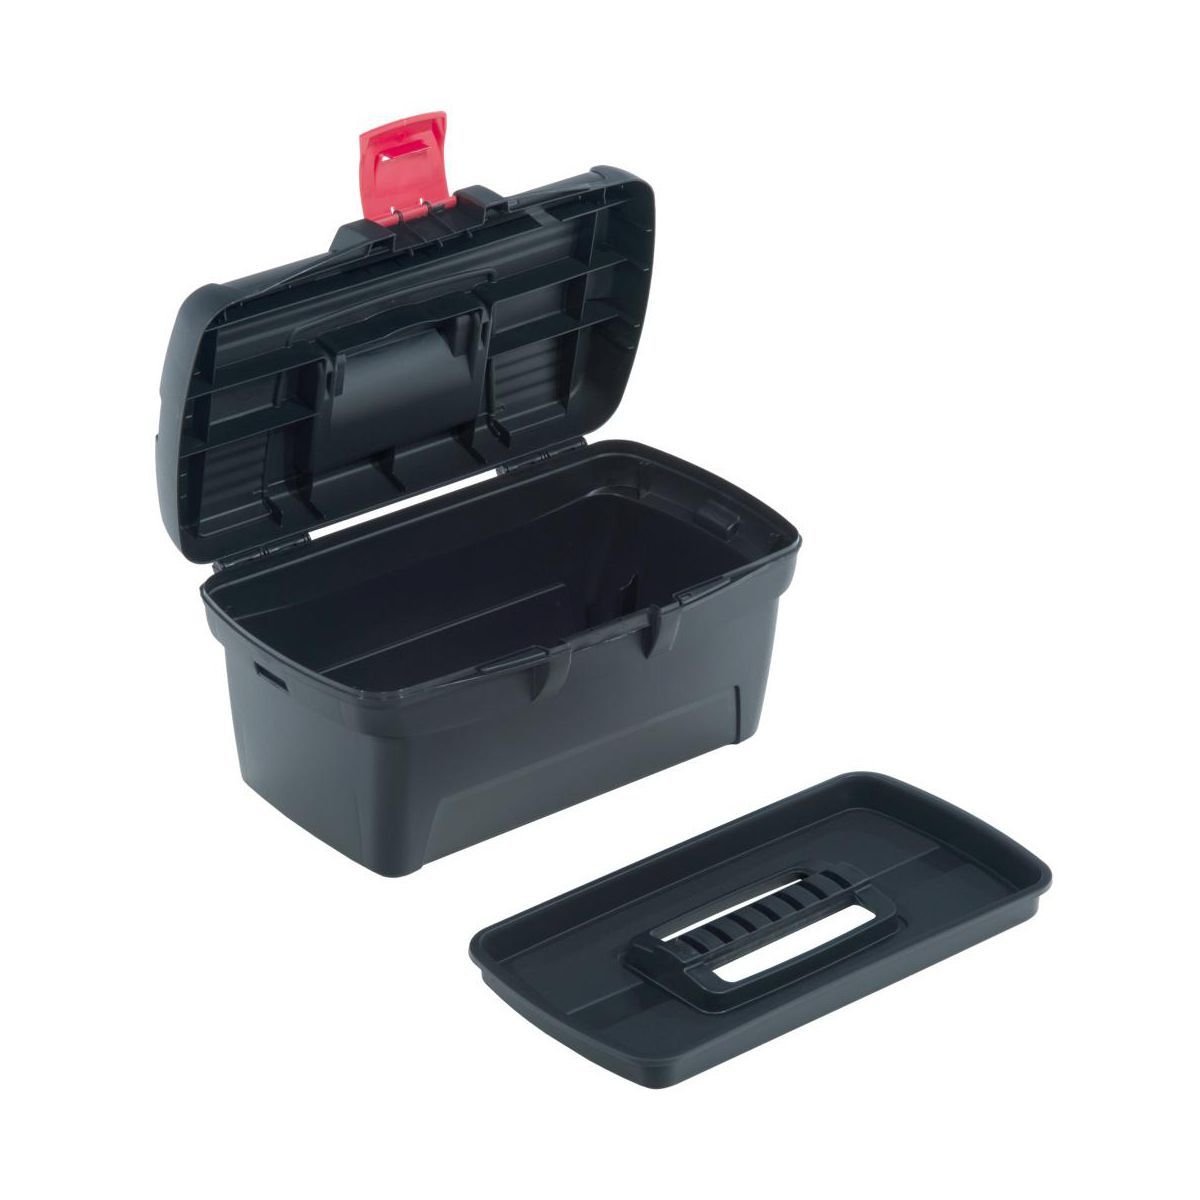 Darbo įrankių dėžė CURVER Herobox, 39,6 x 23,1 x 22,1 cm, komplekte papildoma dėžė - 2